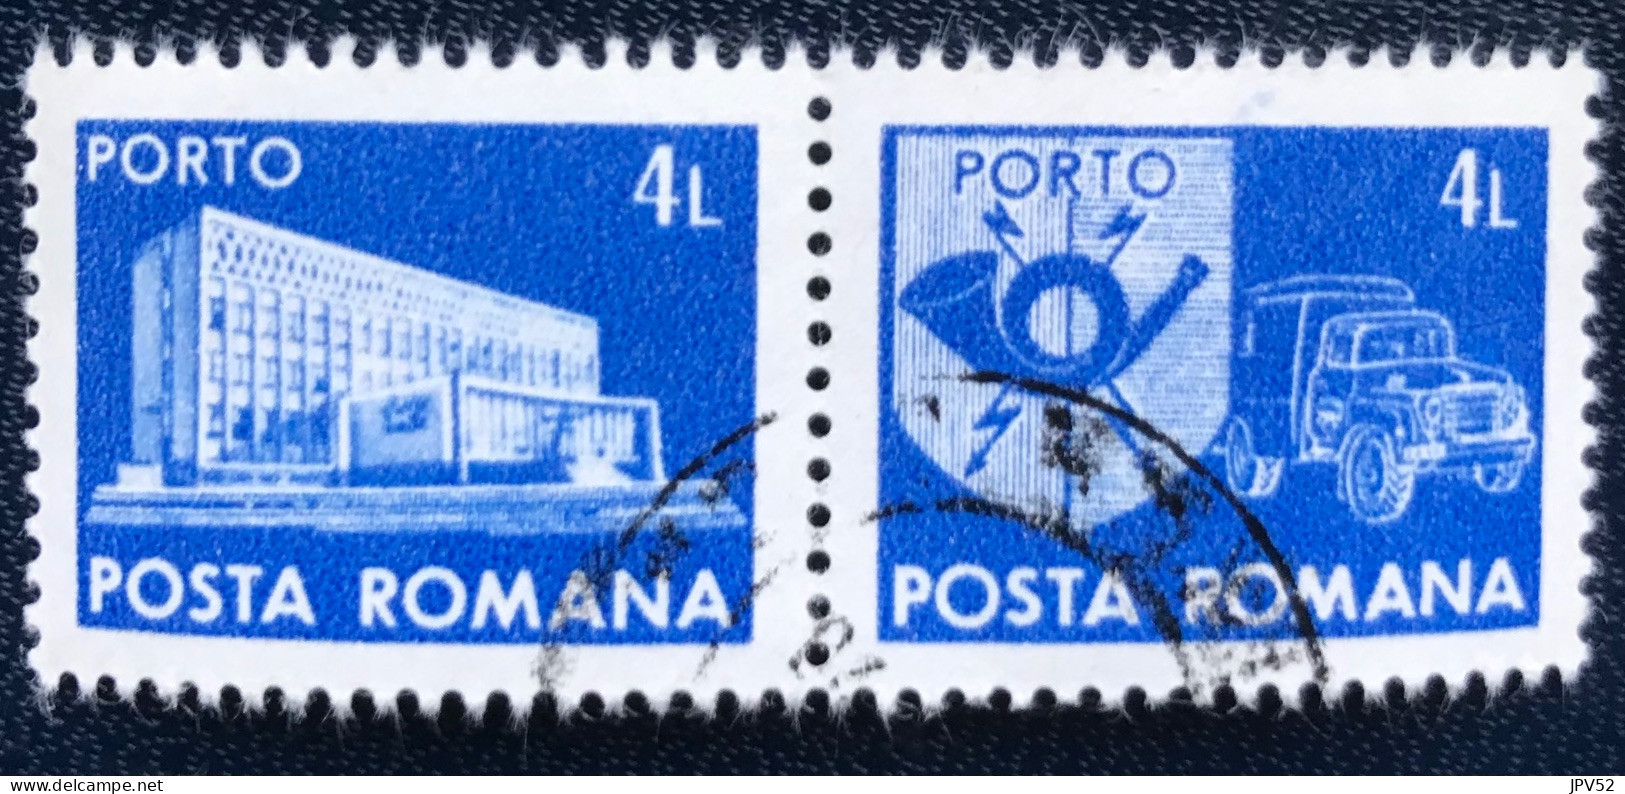 Romana - Roemenië - C14/55 - 1982 - (°)used - Michel 130 - Postkantoor & Postembleem & Postvoertuig - Postage Due